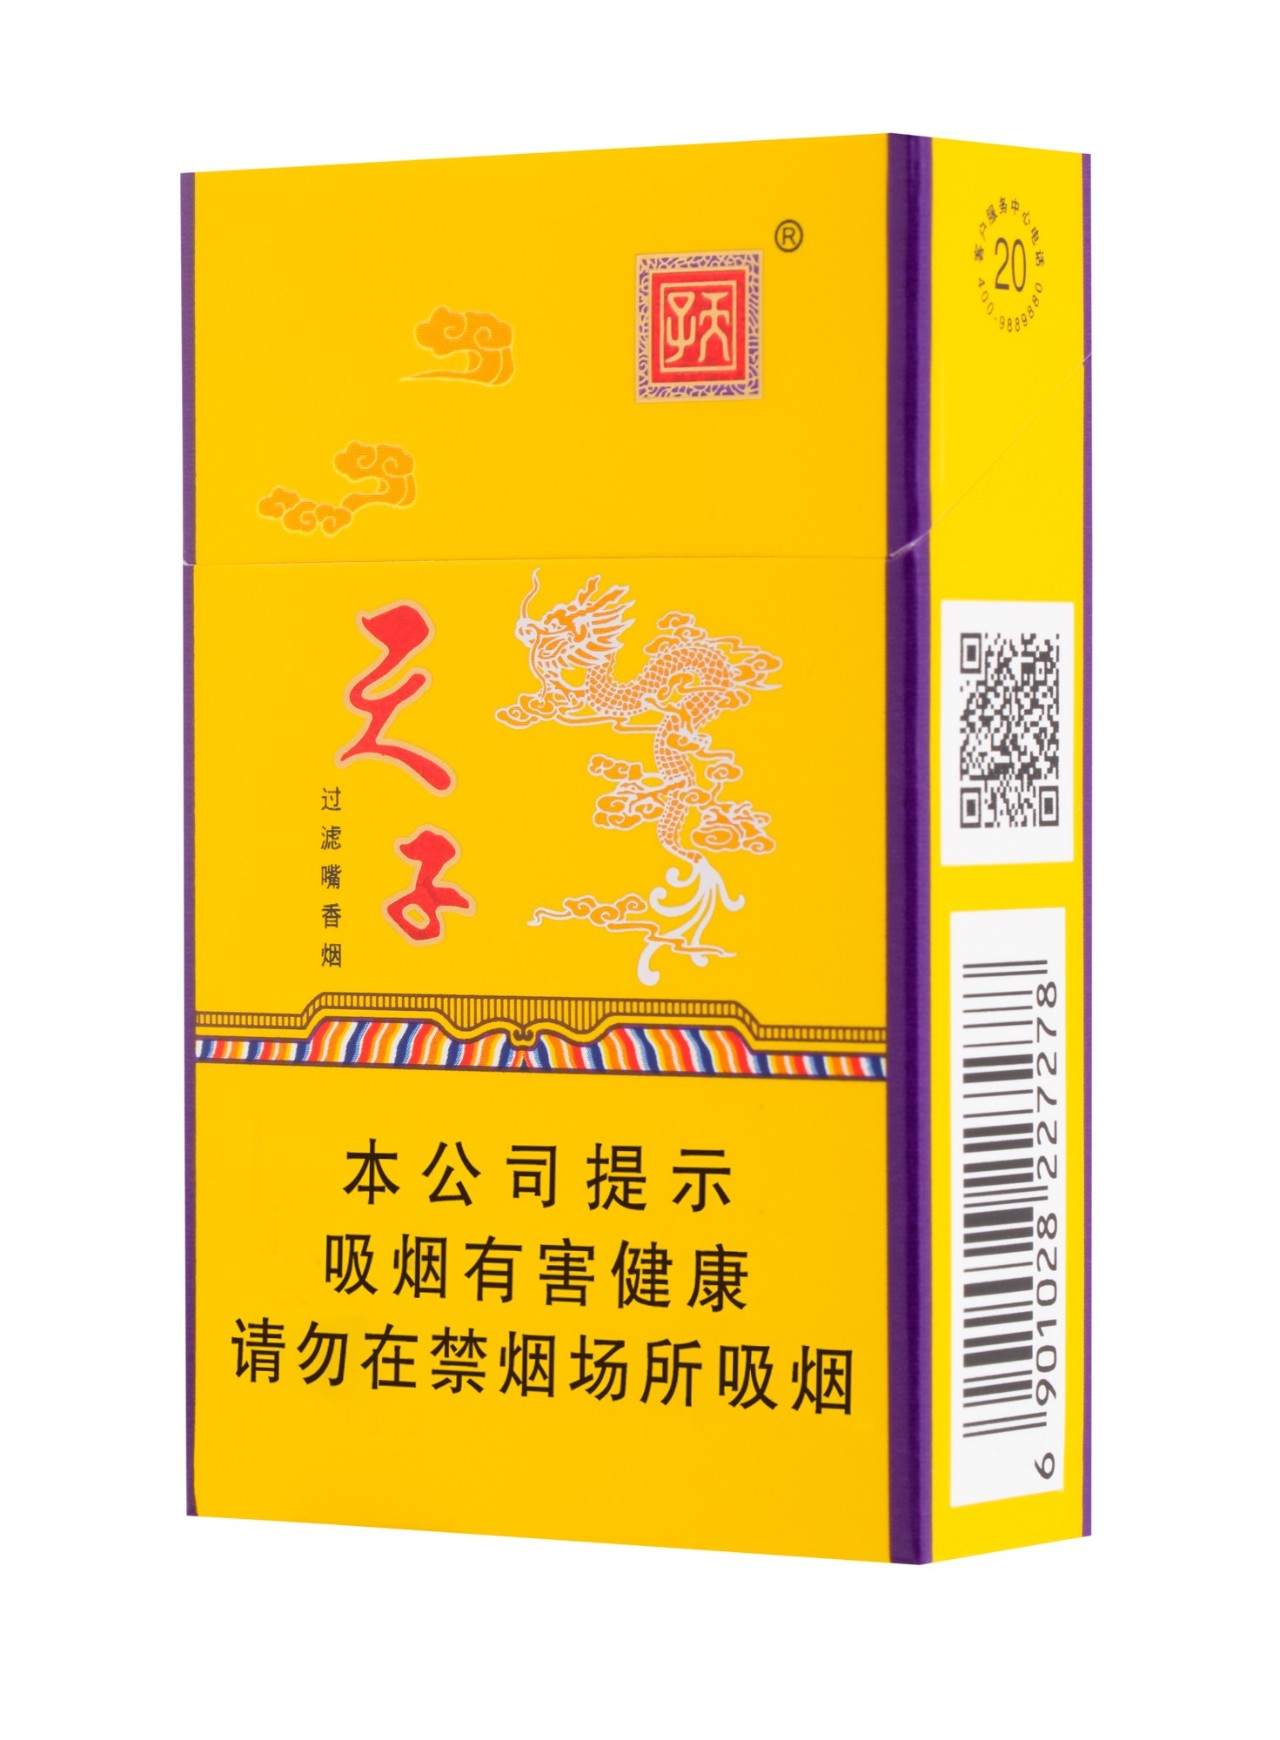 重庆中烟成立三周年:坚定谋超越,一步一台阶